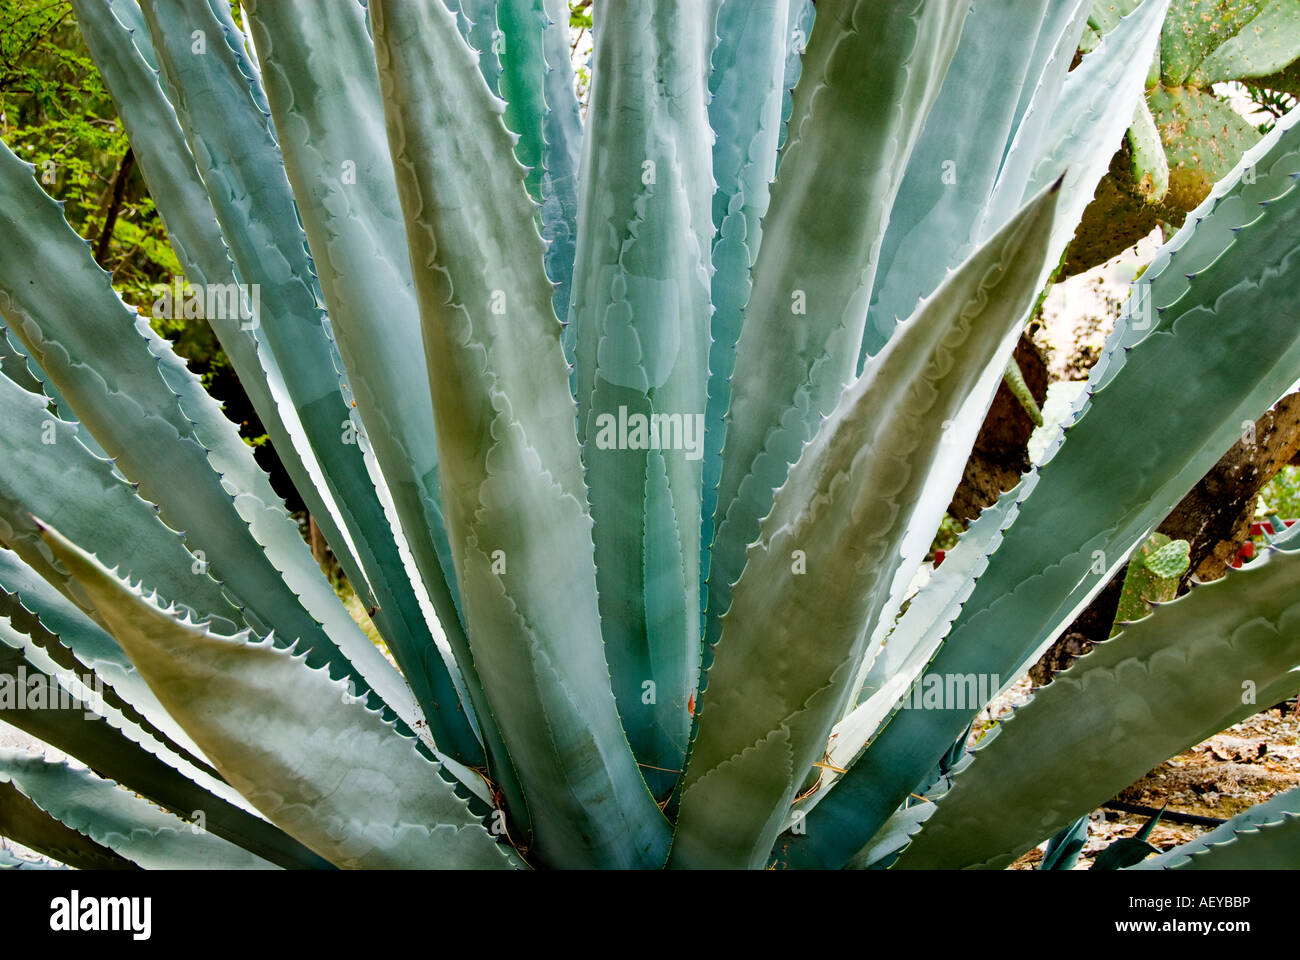 Un cactus agave bleu Photo Stock - Alamy